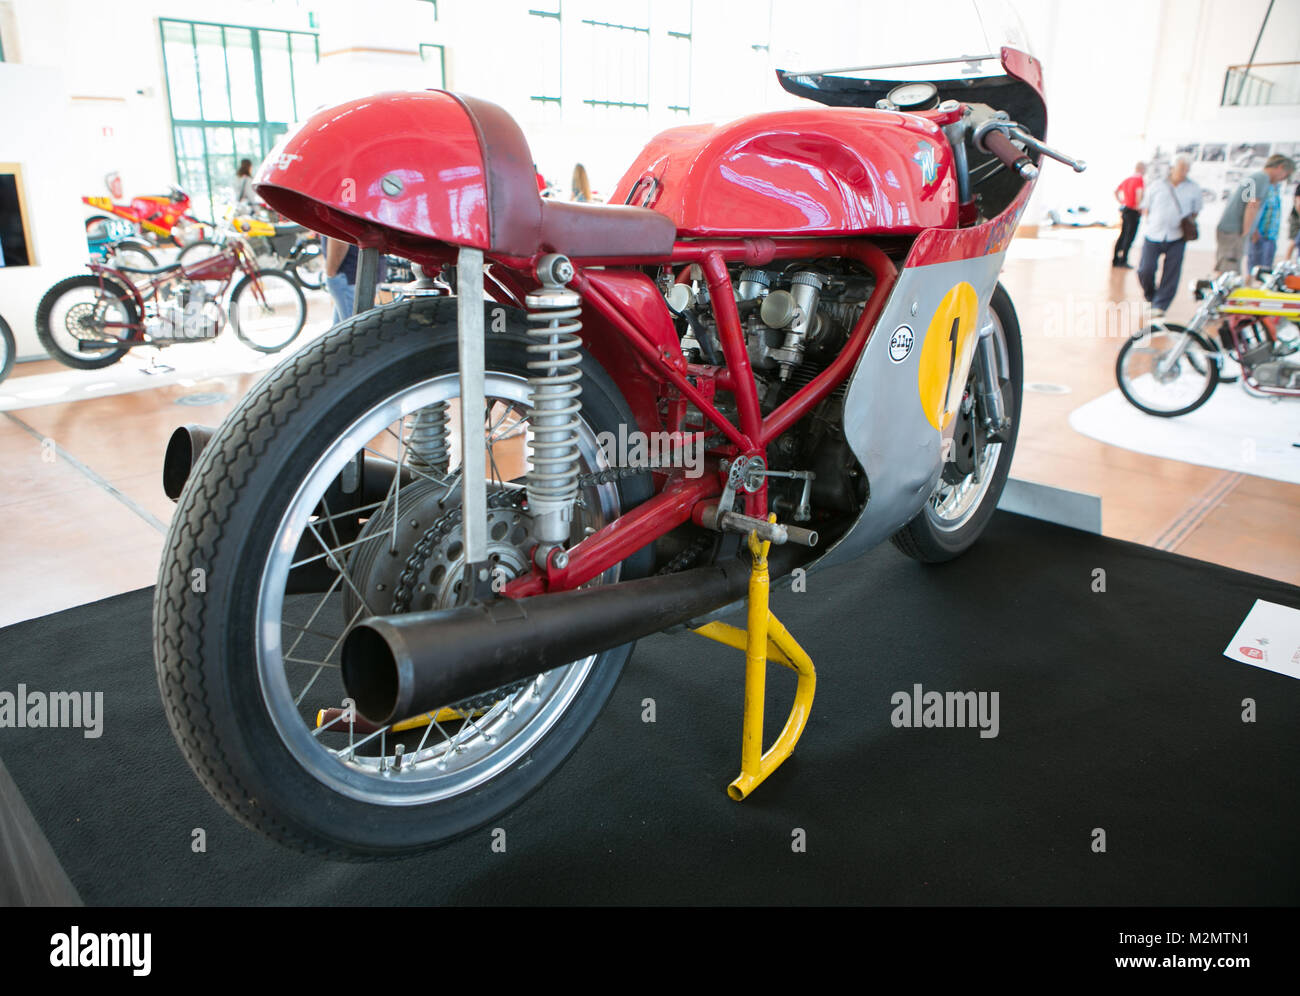 Trieste, Italie 02 sept 2016:afficher 110 anni del motoclub trieste.Photo d'une rare Giacomo Agostini MV Agusta 500cc trois est une moto de course à la concurrence Banque D'Images